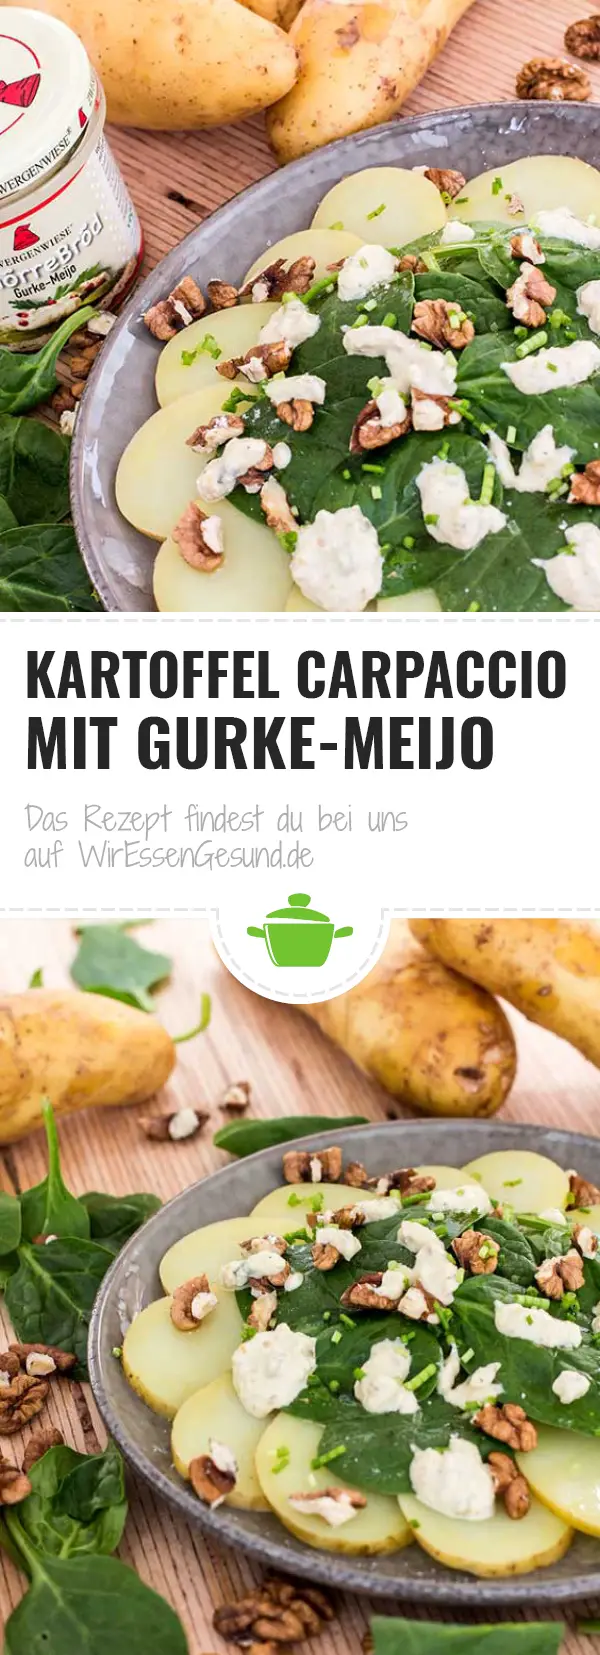 Kartoffel Carpaccio mit Gurke-Meijo - WirEssenGesund